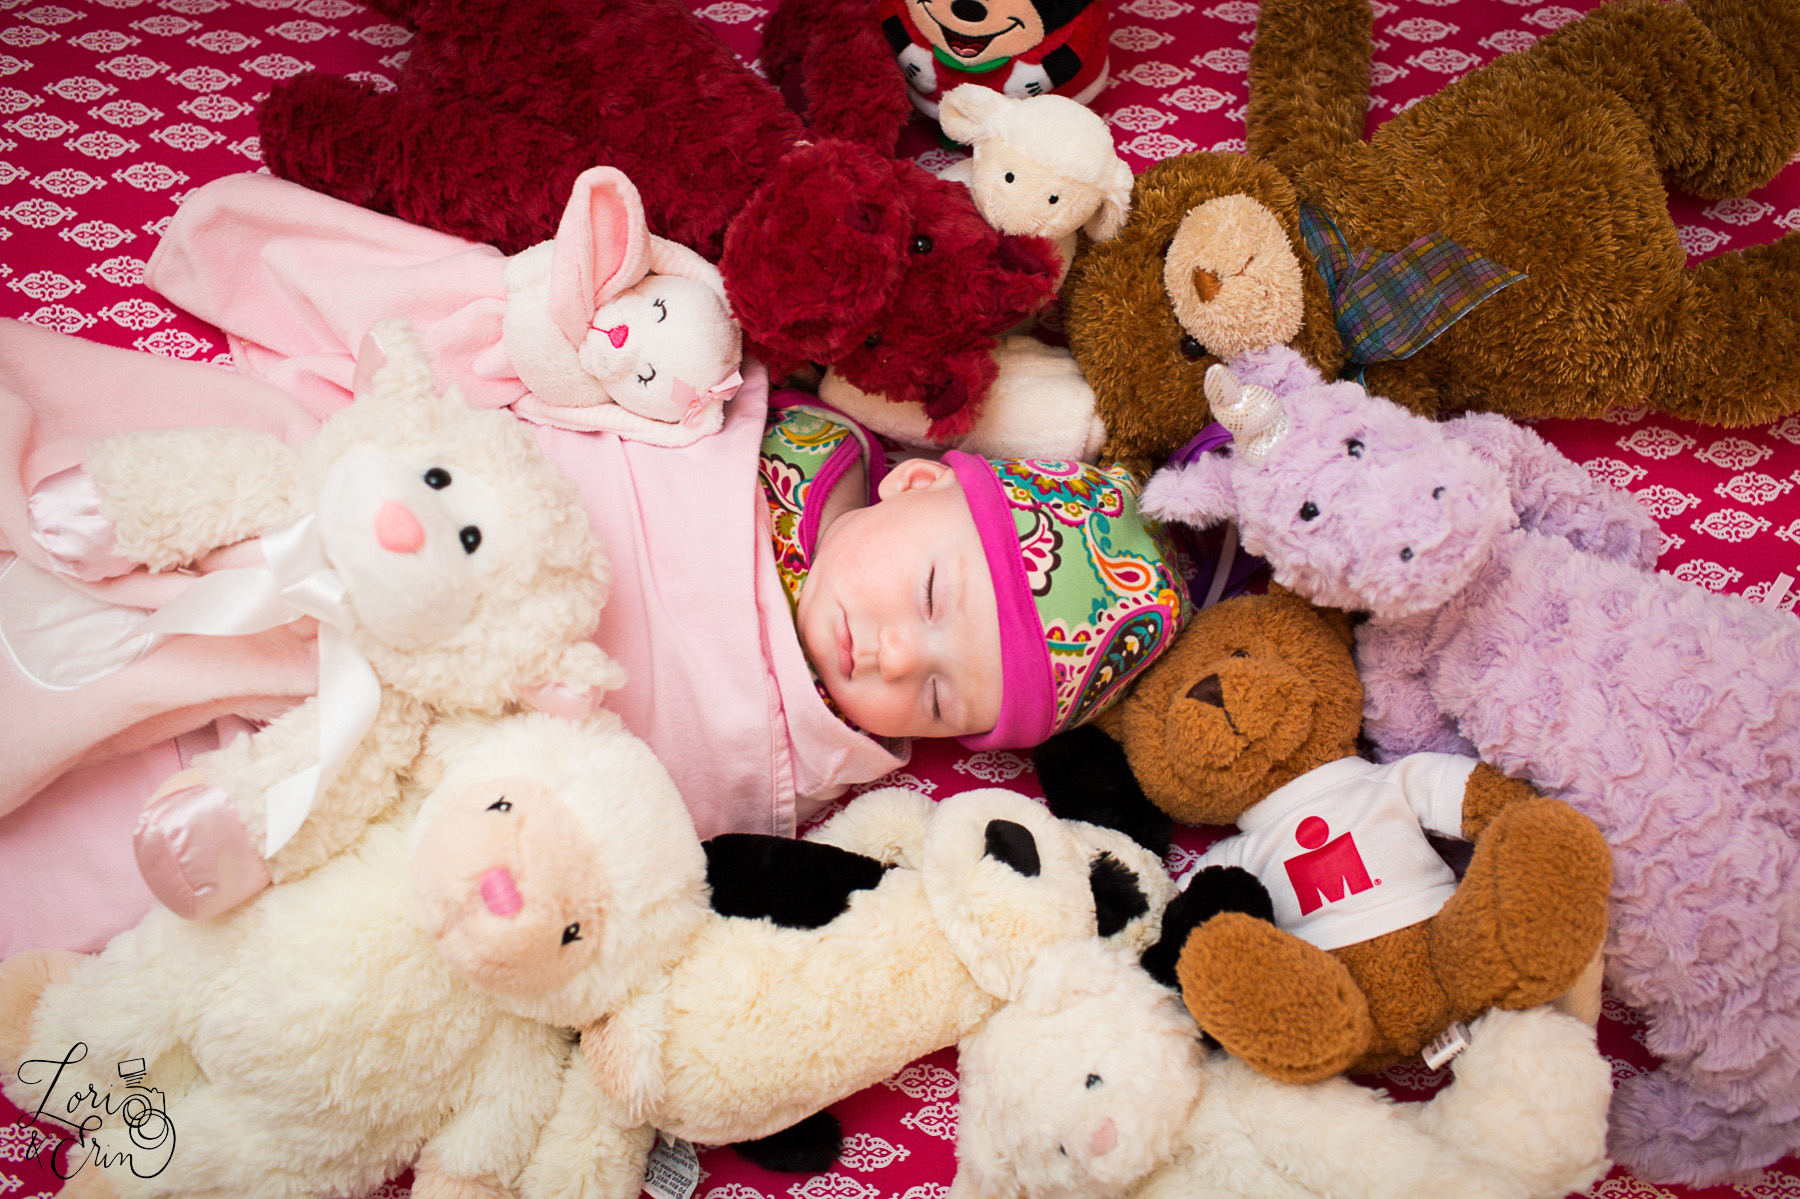 sleeping baby with stuffed animals